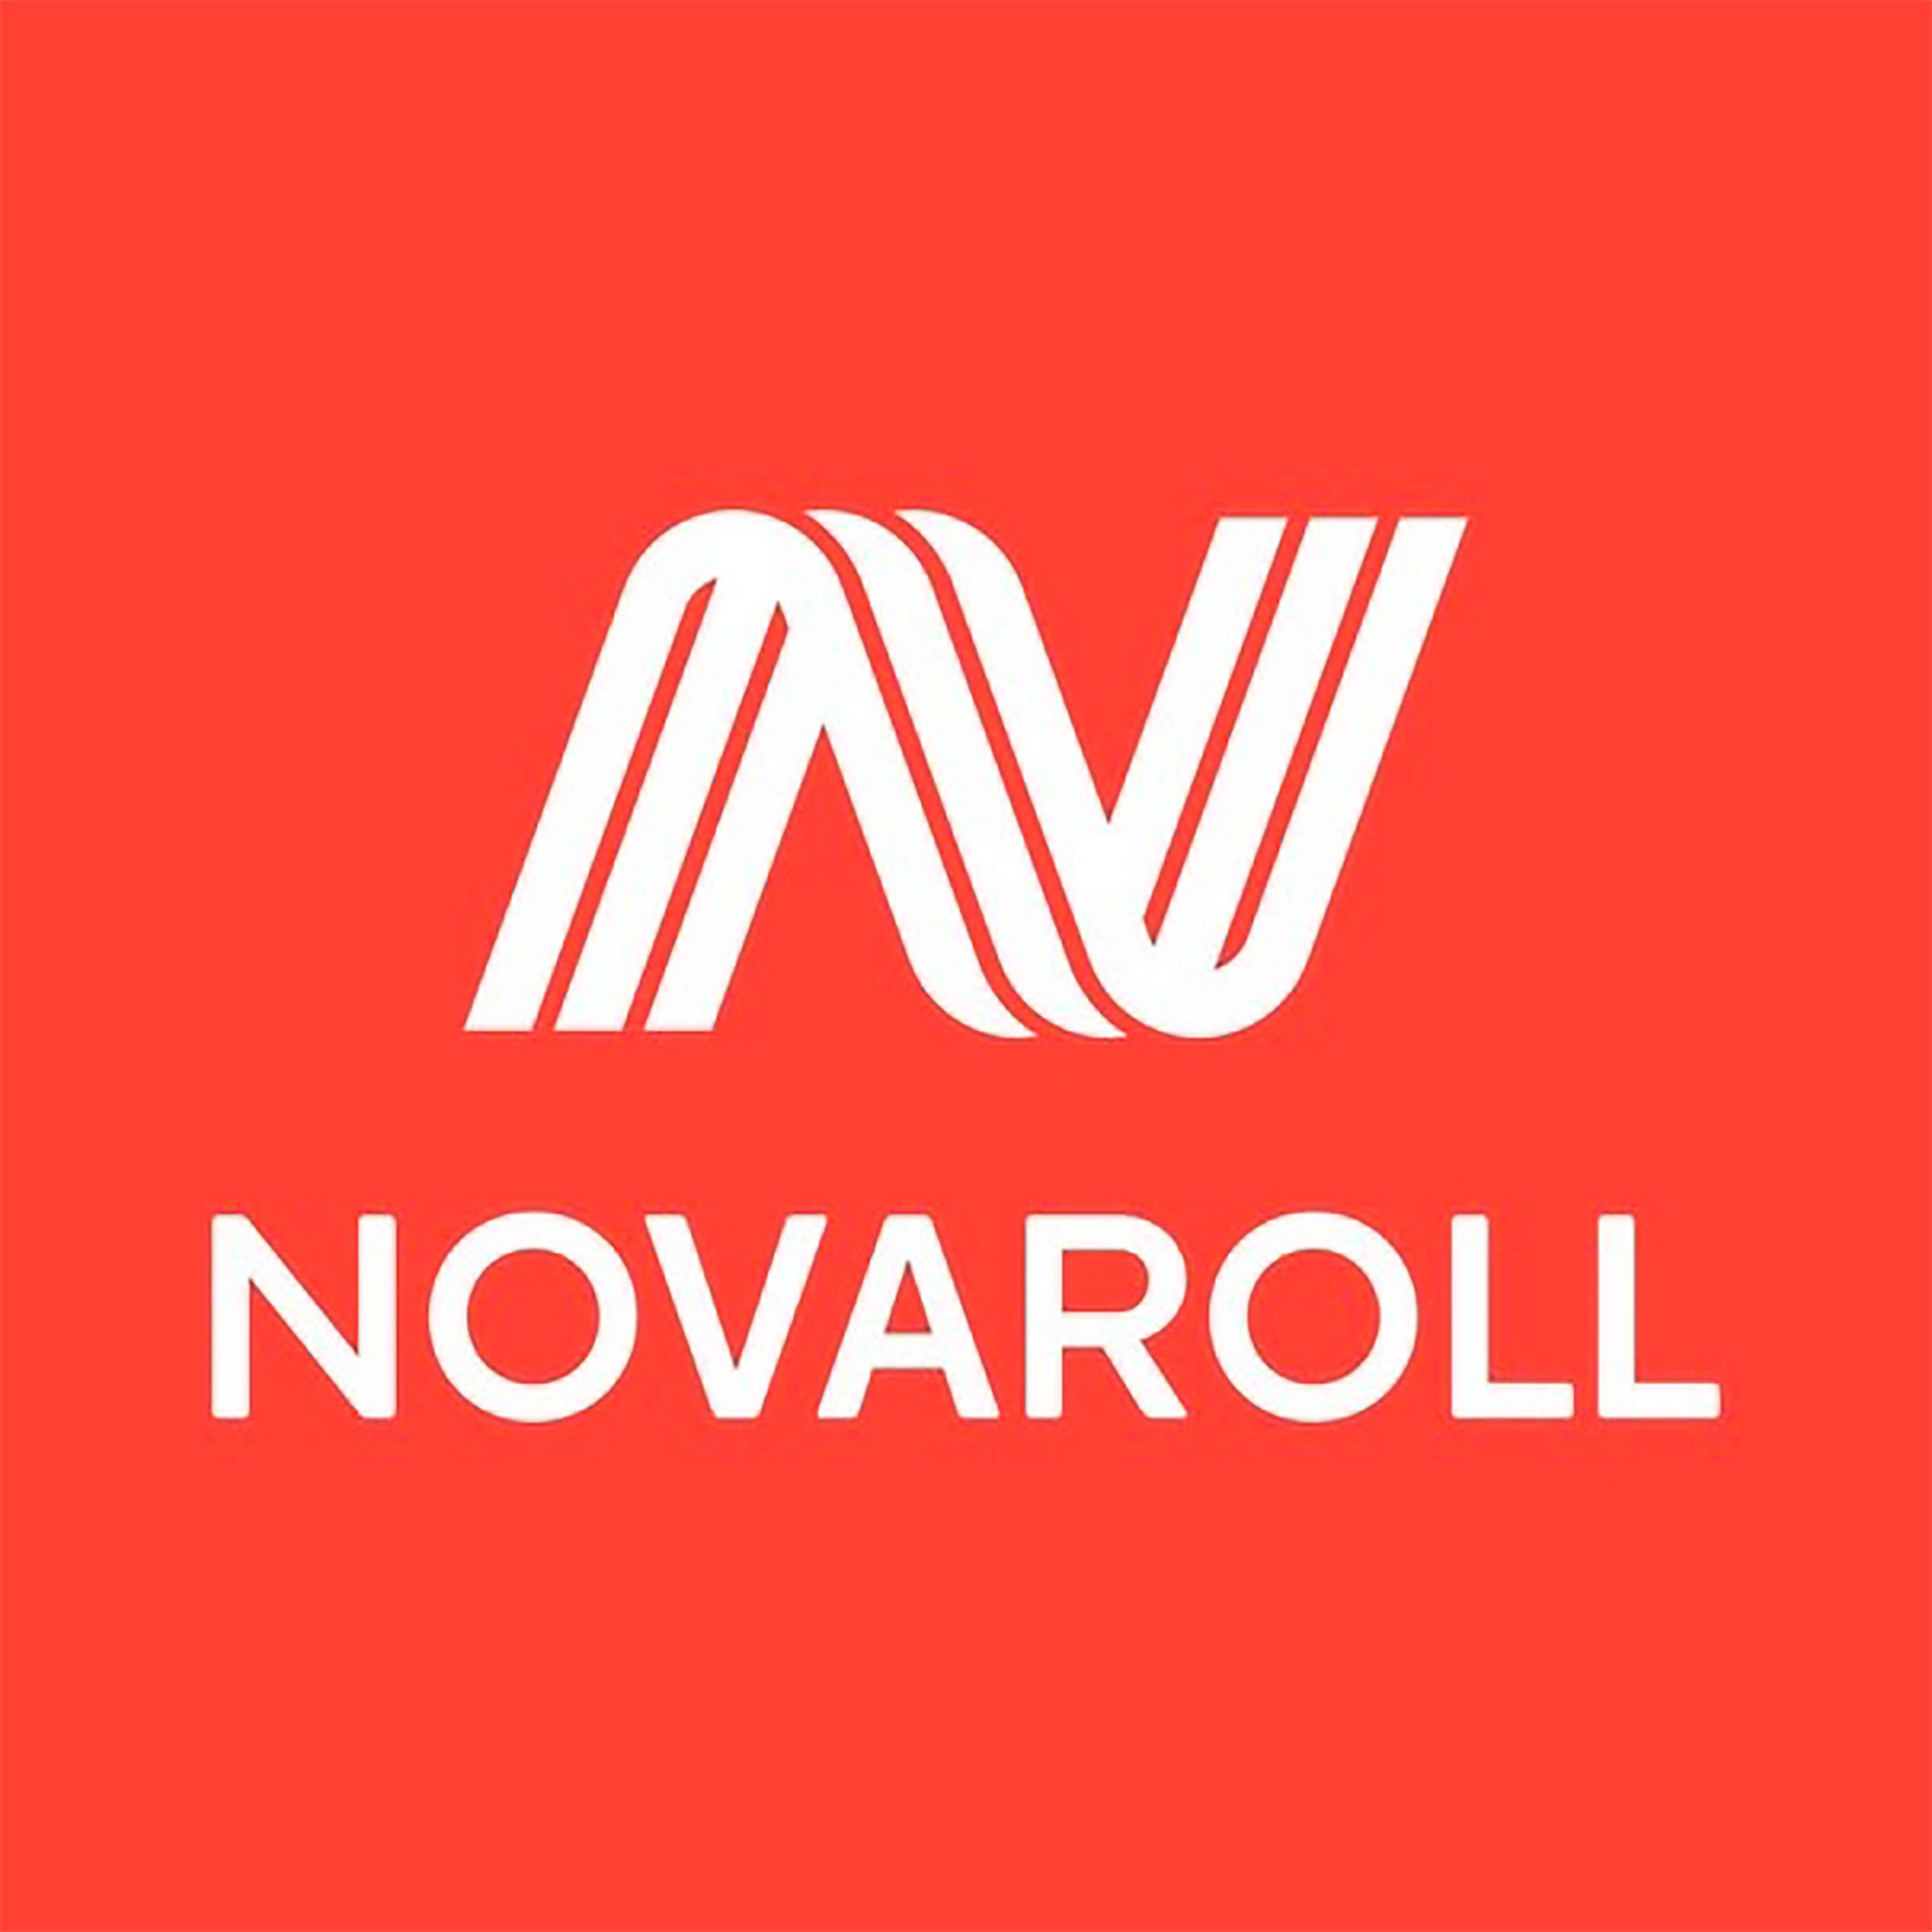 Нова ролл сайт. Логотип. Nova Roll логотип. NOVAROLL компания. Новоролл стрейч Камские Поляны.